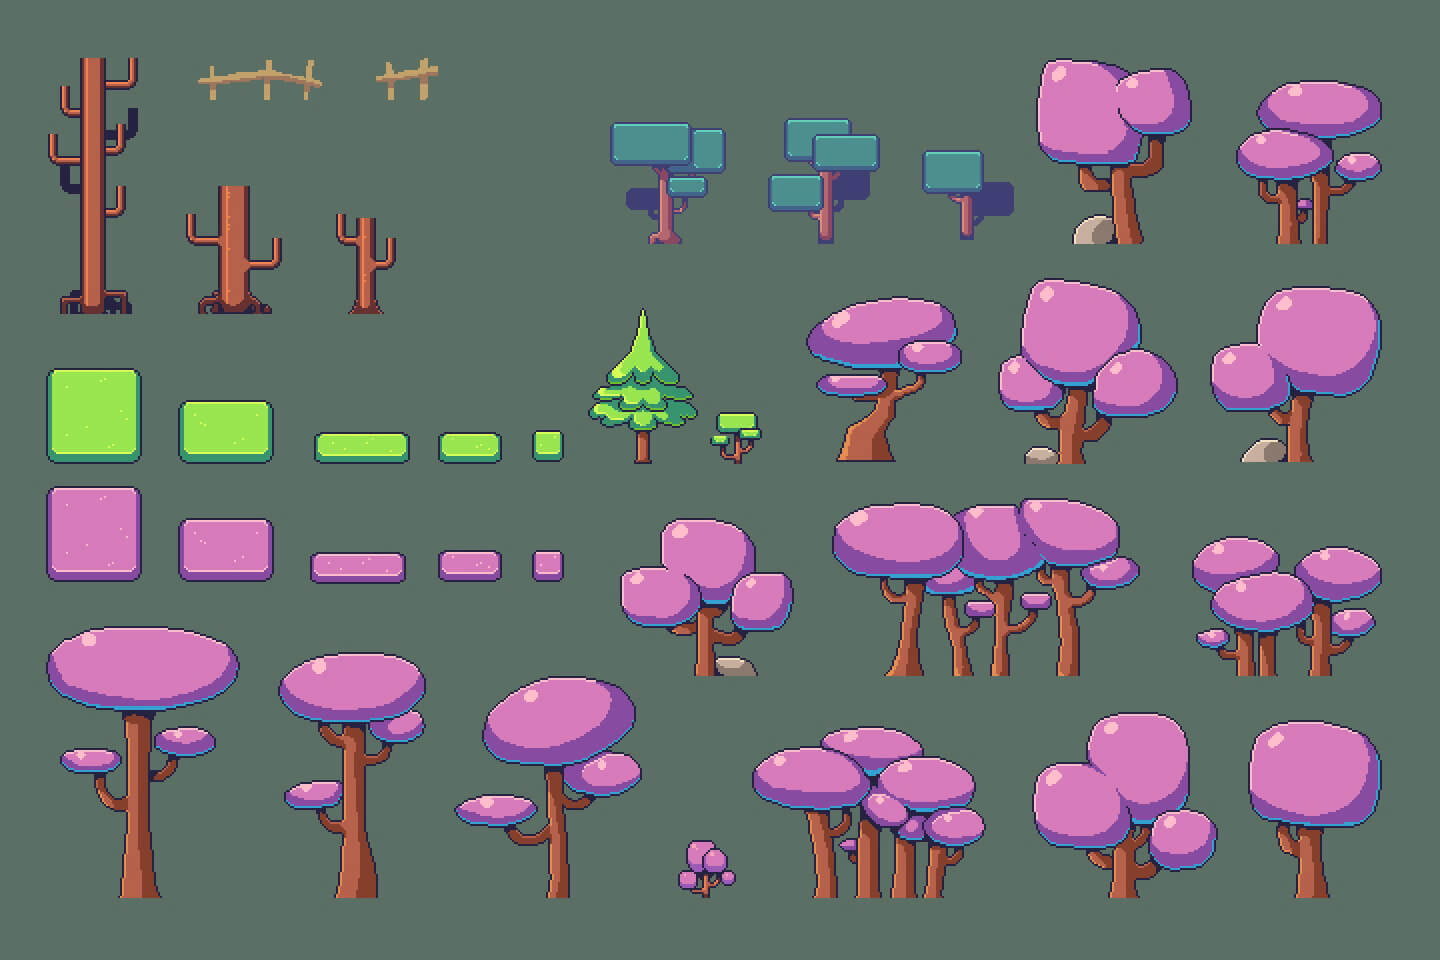 Forest Pixel Art Environment Asset Set - CraftPix.net